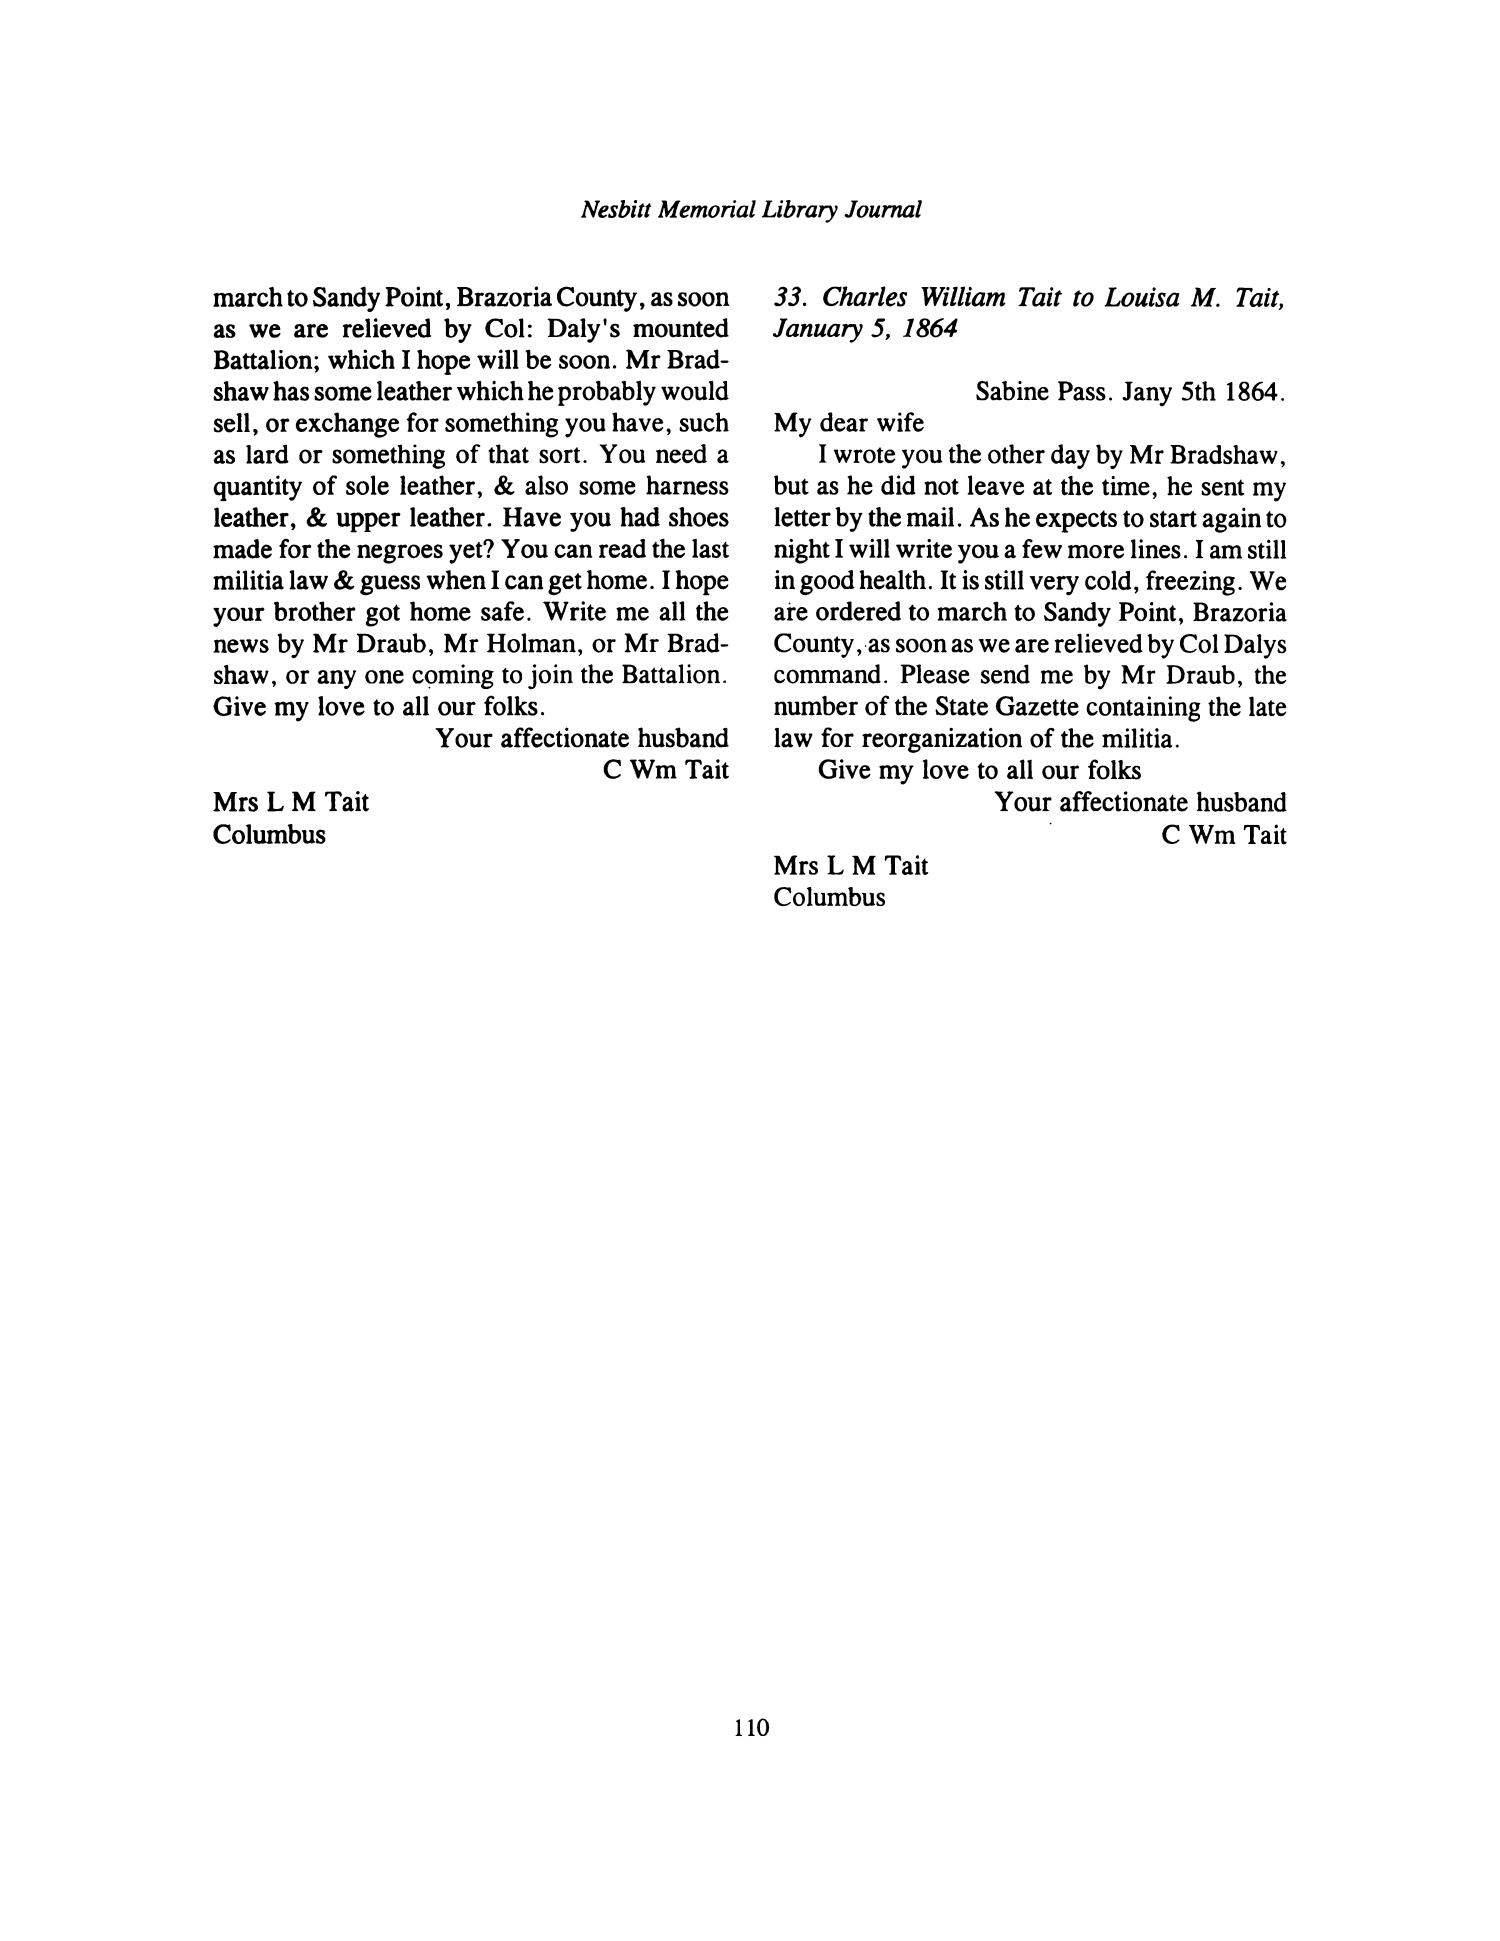 Nesbitt Memorial Library Journal, Volume 6, Number 2, May 1996
                                                
                                                    110
                                                